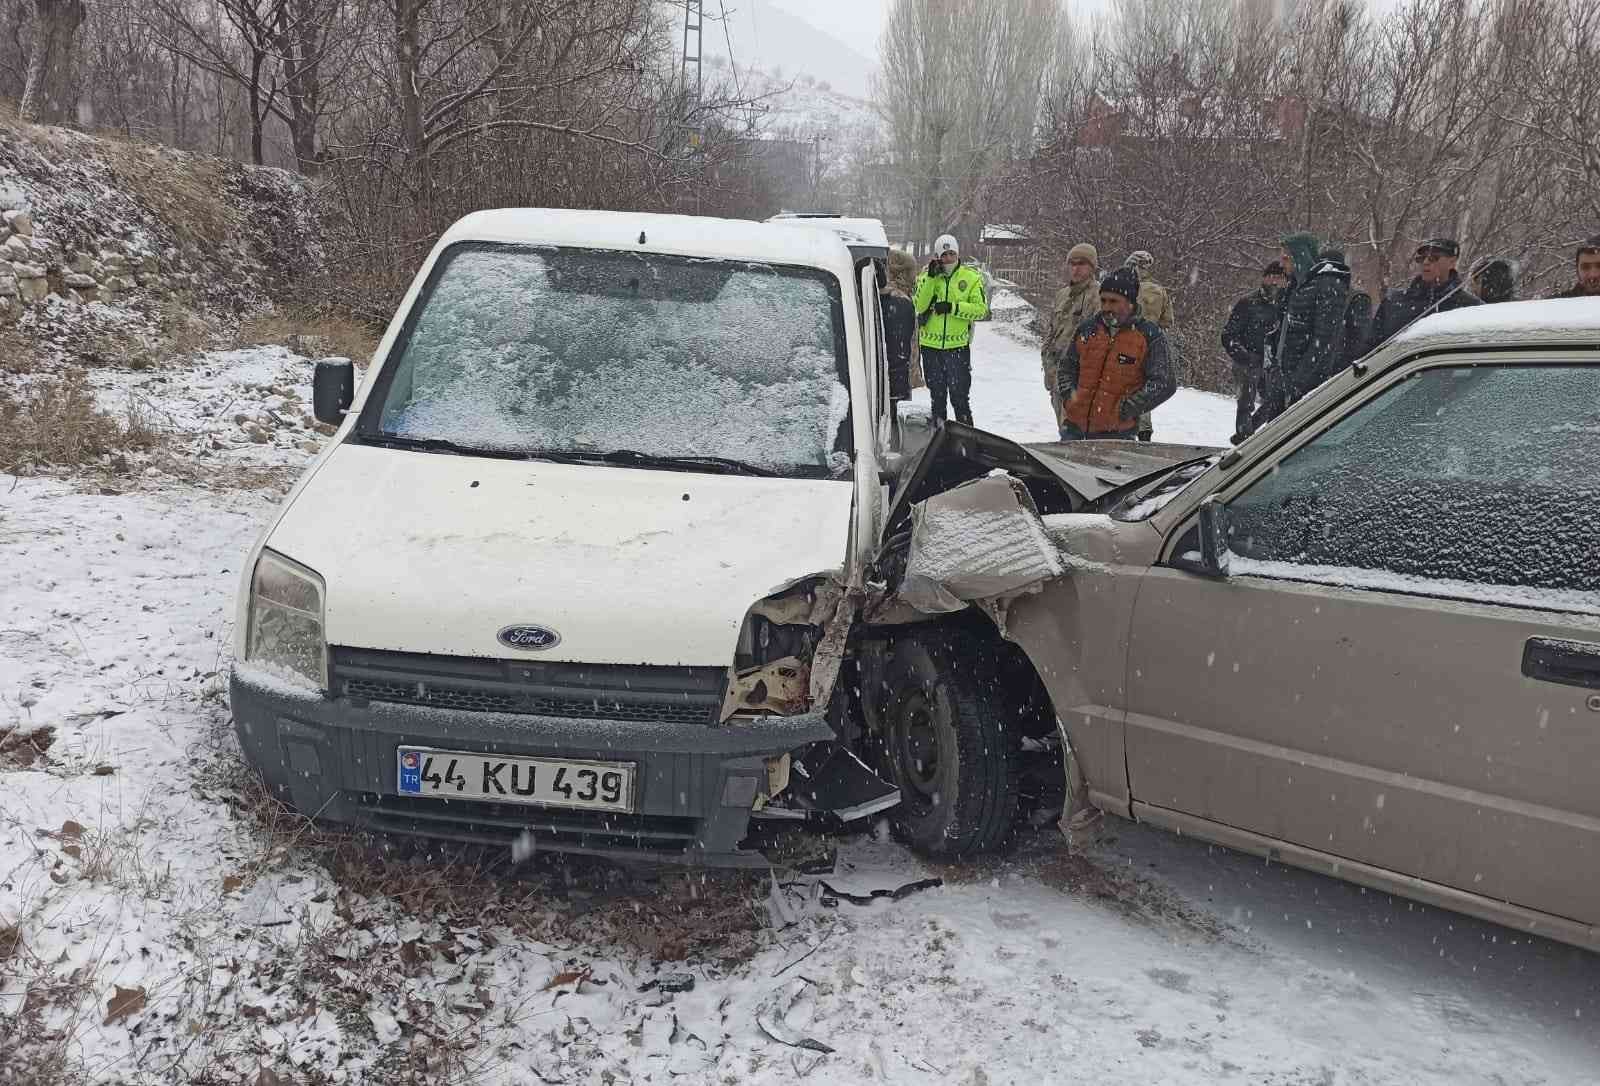 Malatya’da kar beraberinde kazaları getirdi #malatya